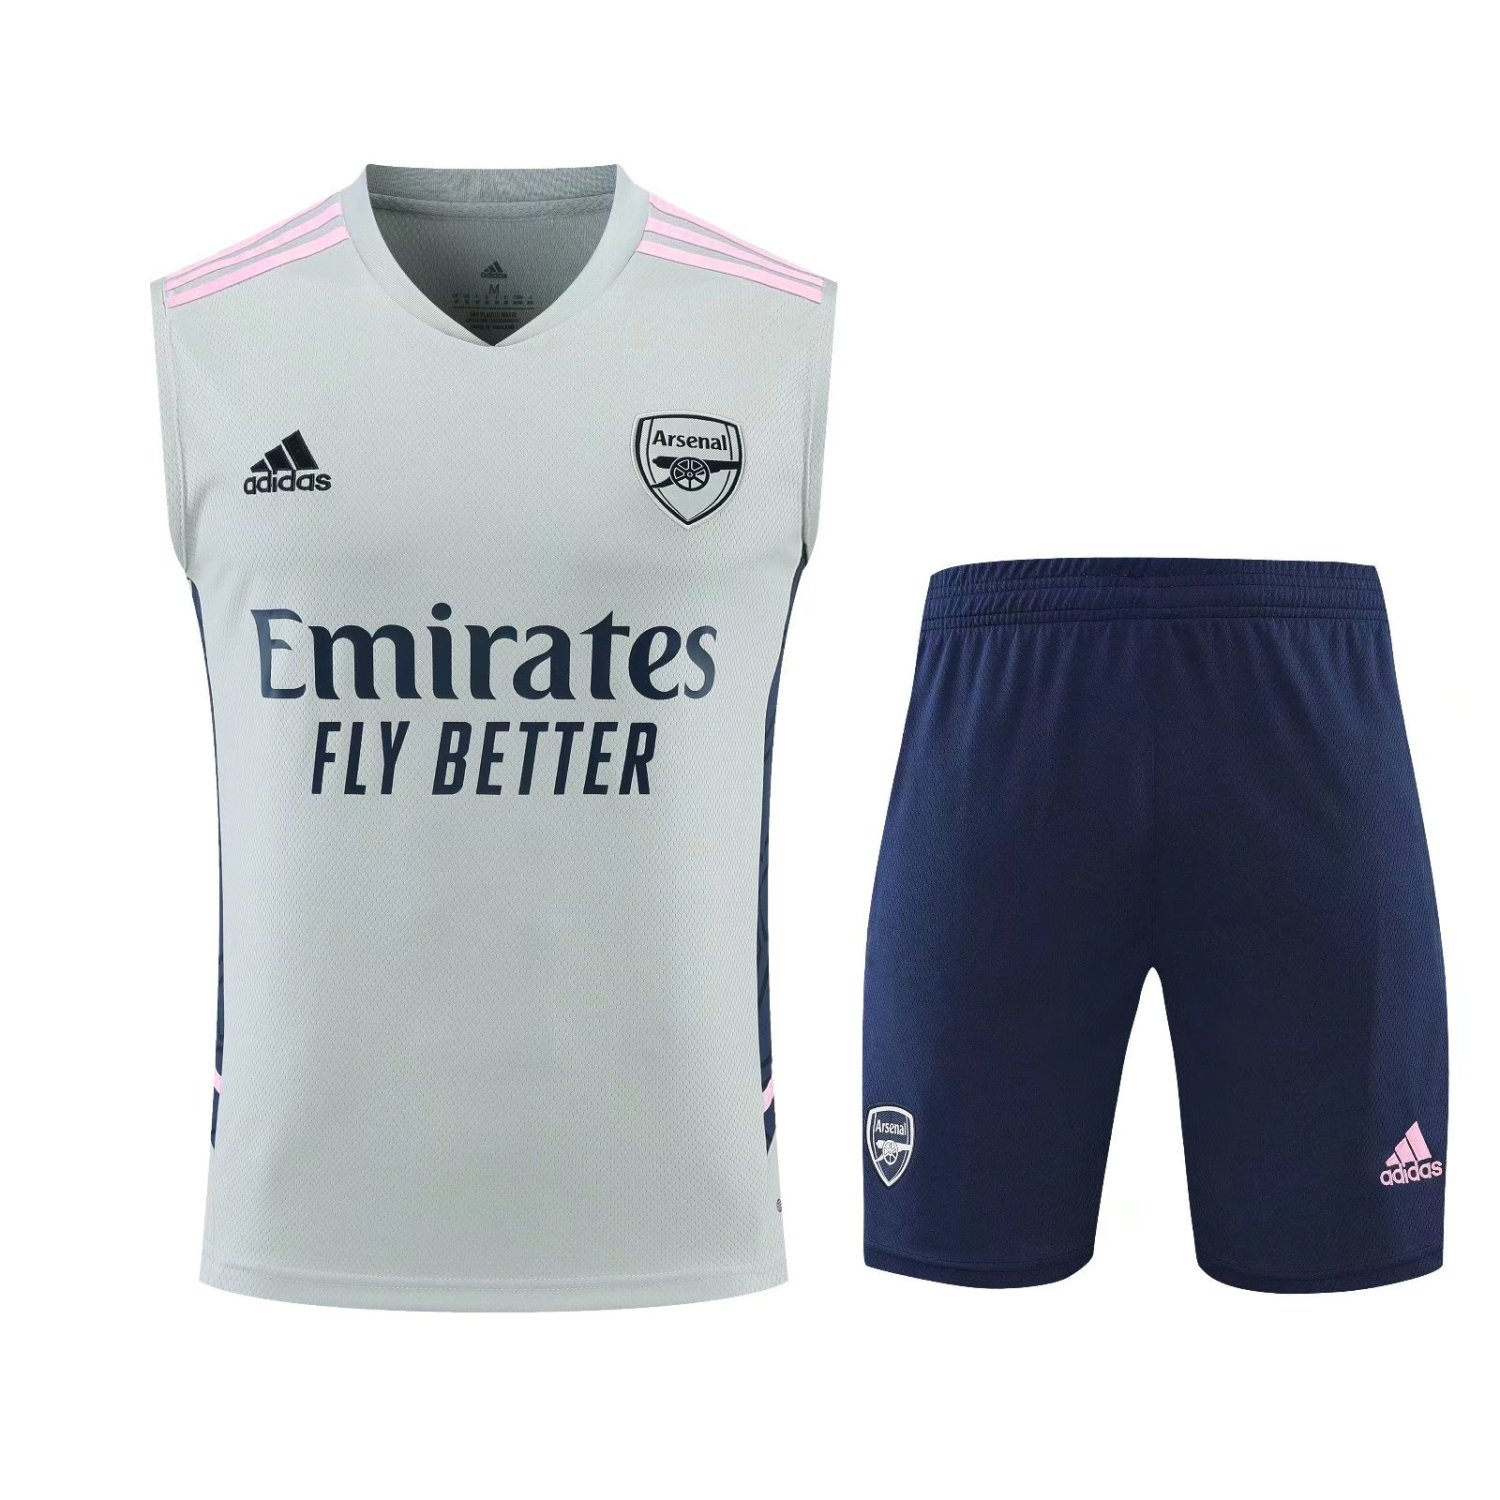 22-23 Arsenal Light Grey Soccer Football Training Kit (Singlet + Shorts) Man